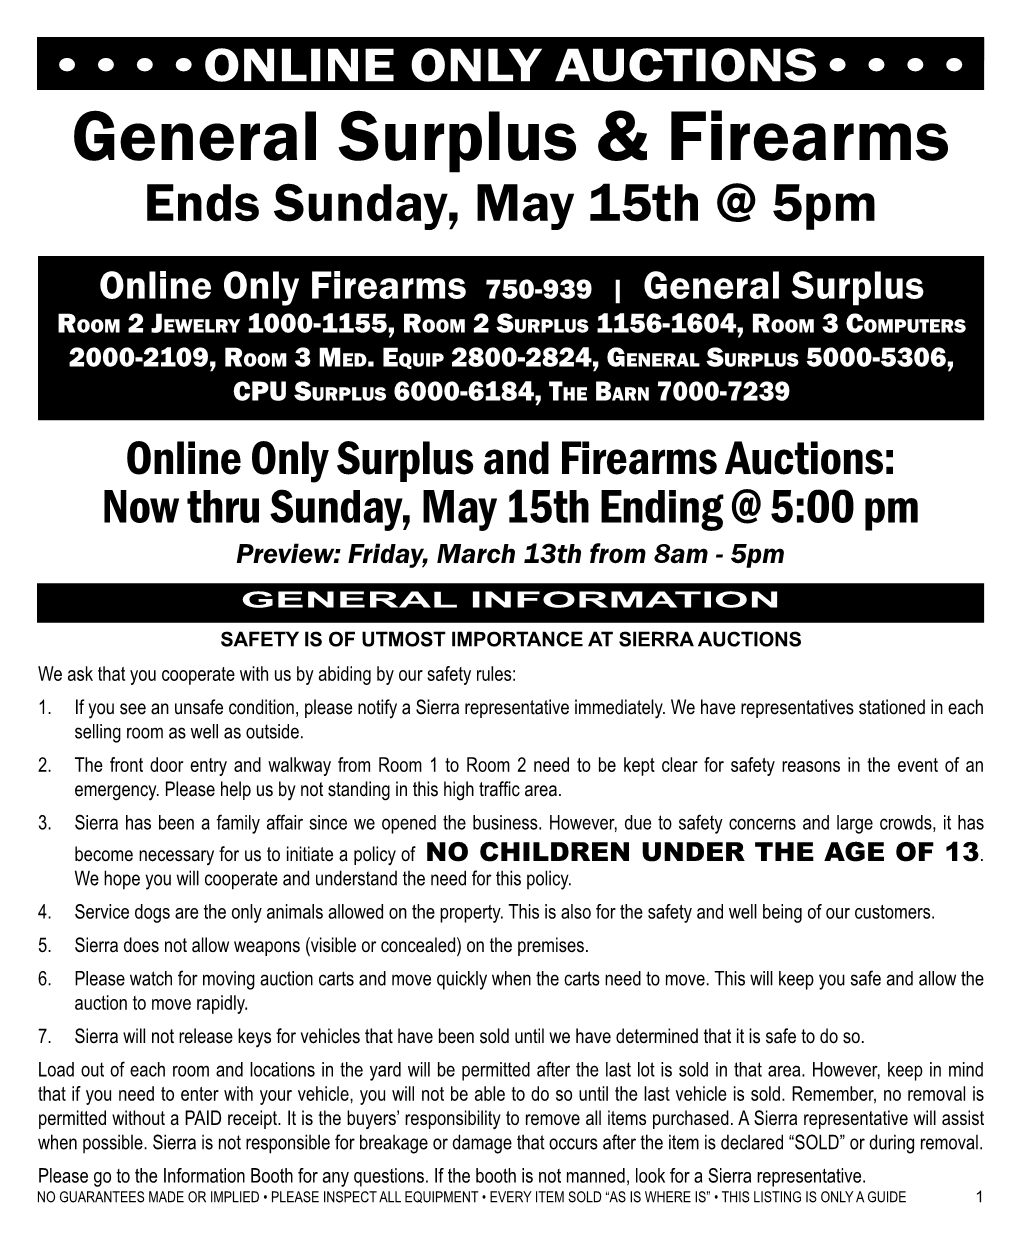 General Surplus & Firearms